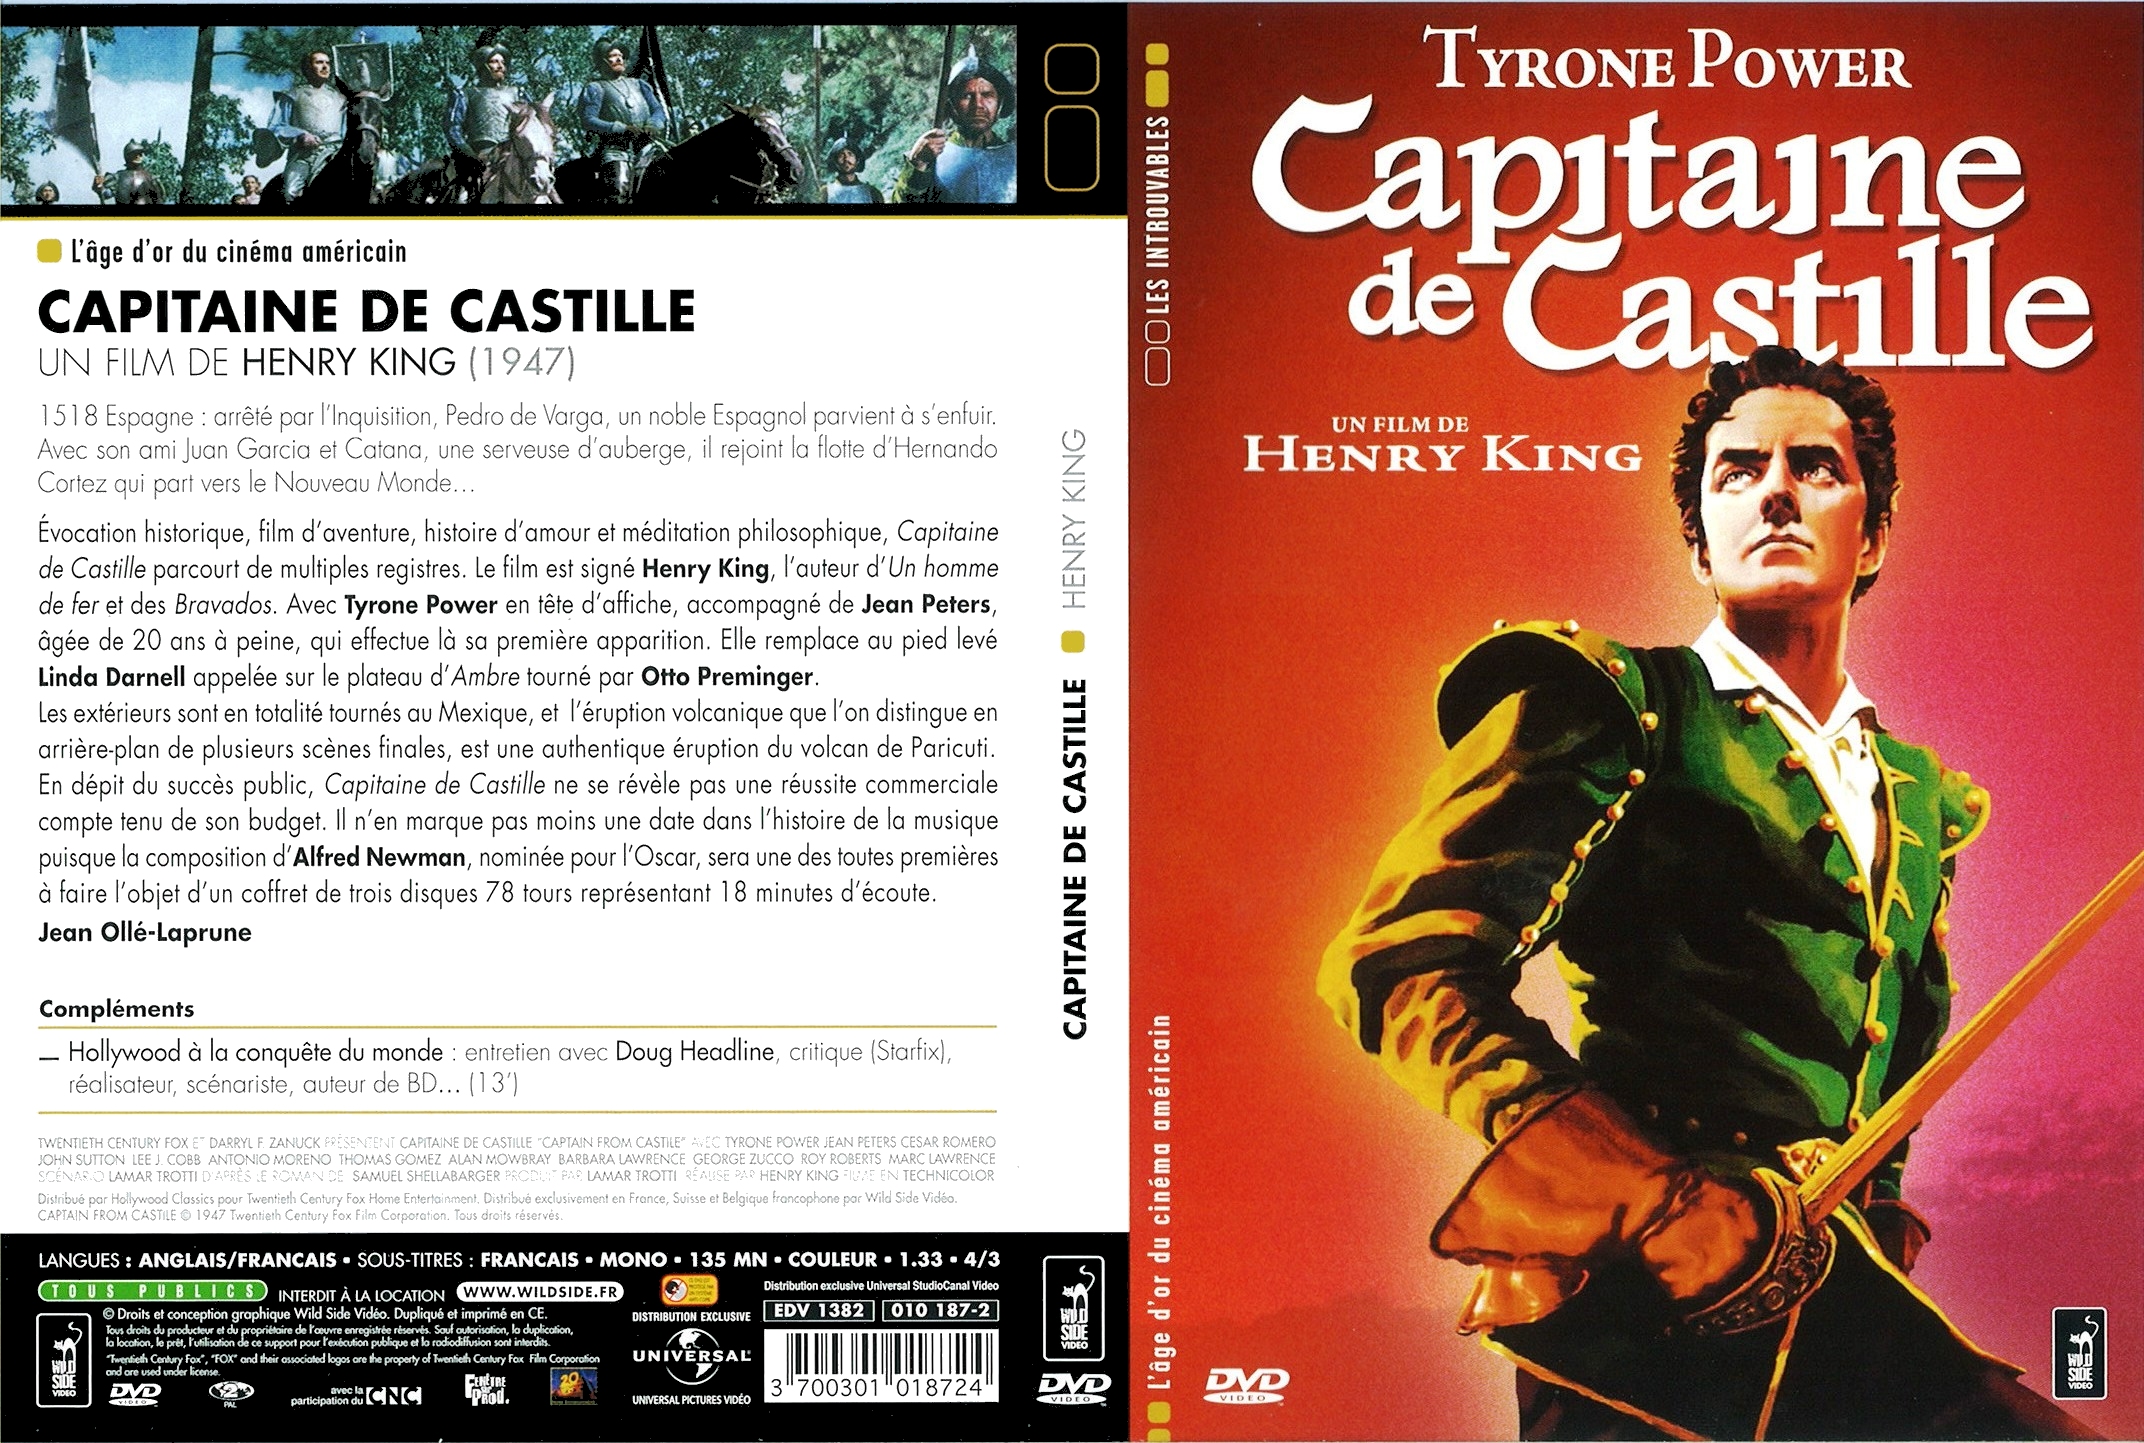 Jaquette DVD Capitaine de Castille